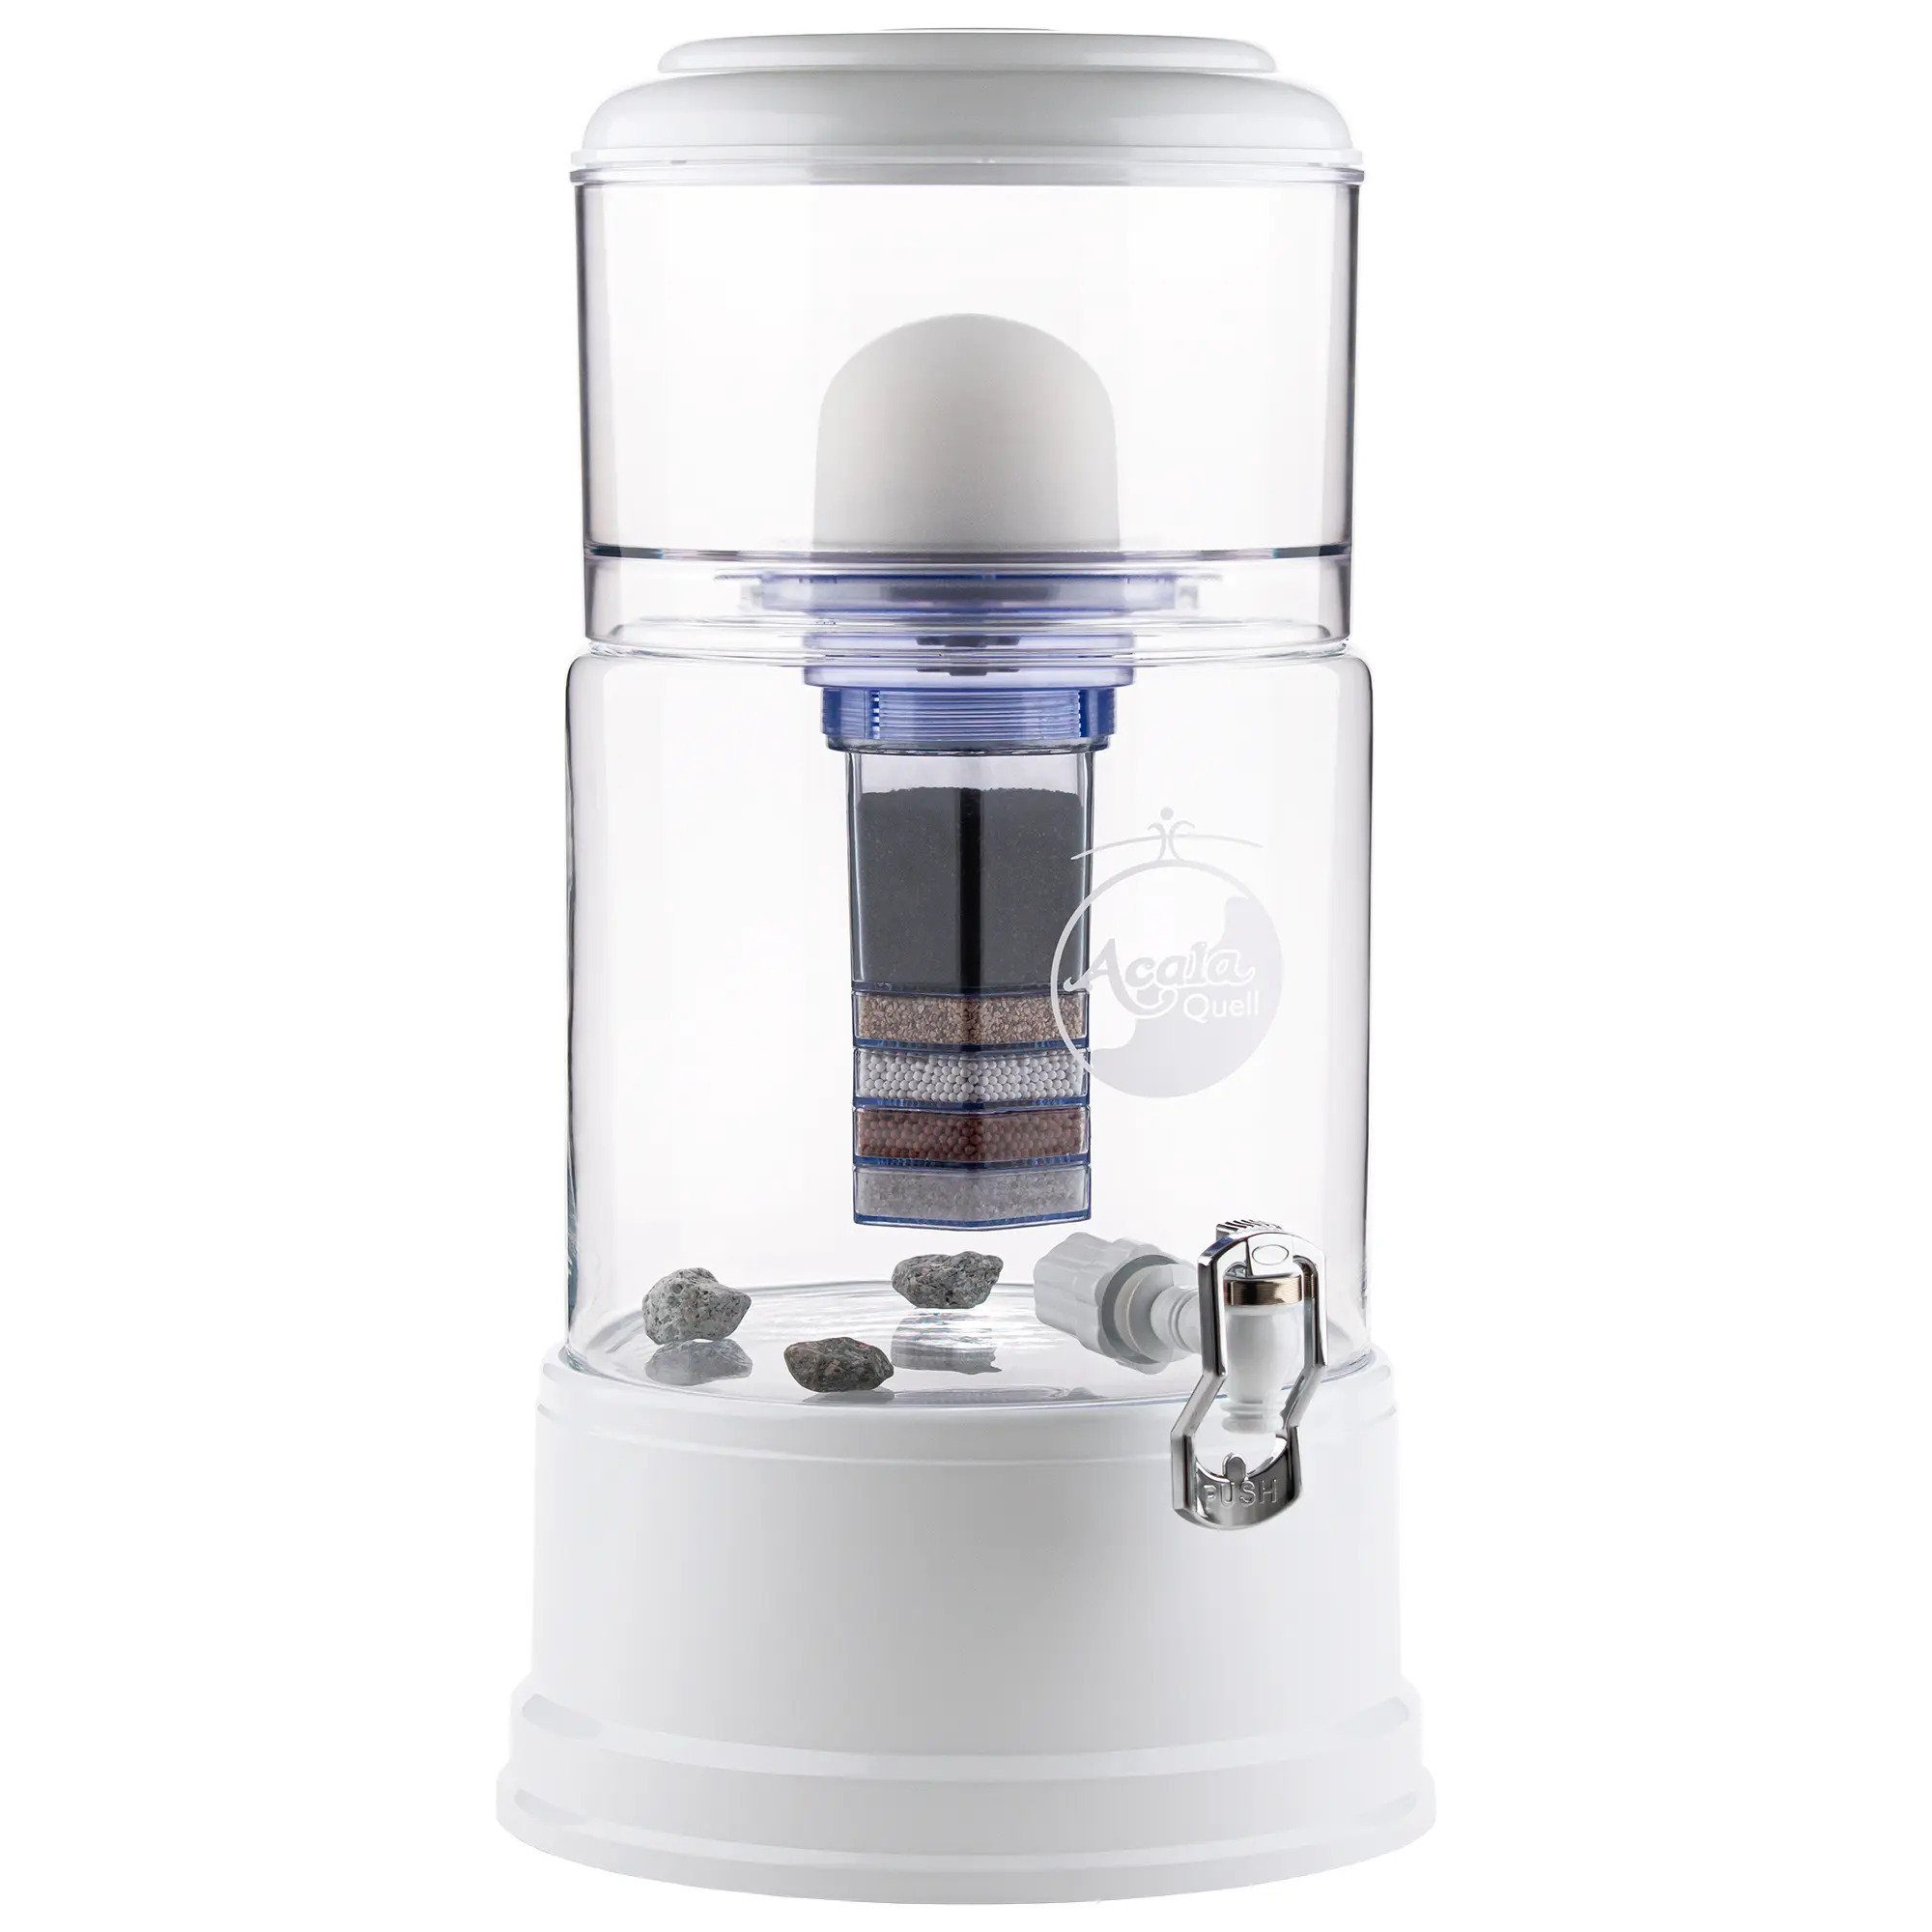 AcalaQuell Wasserfilter Standfilter Smart - mit handgefertigtem Glasbehälter (8 Liter), ideal für 2-4 Personen